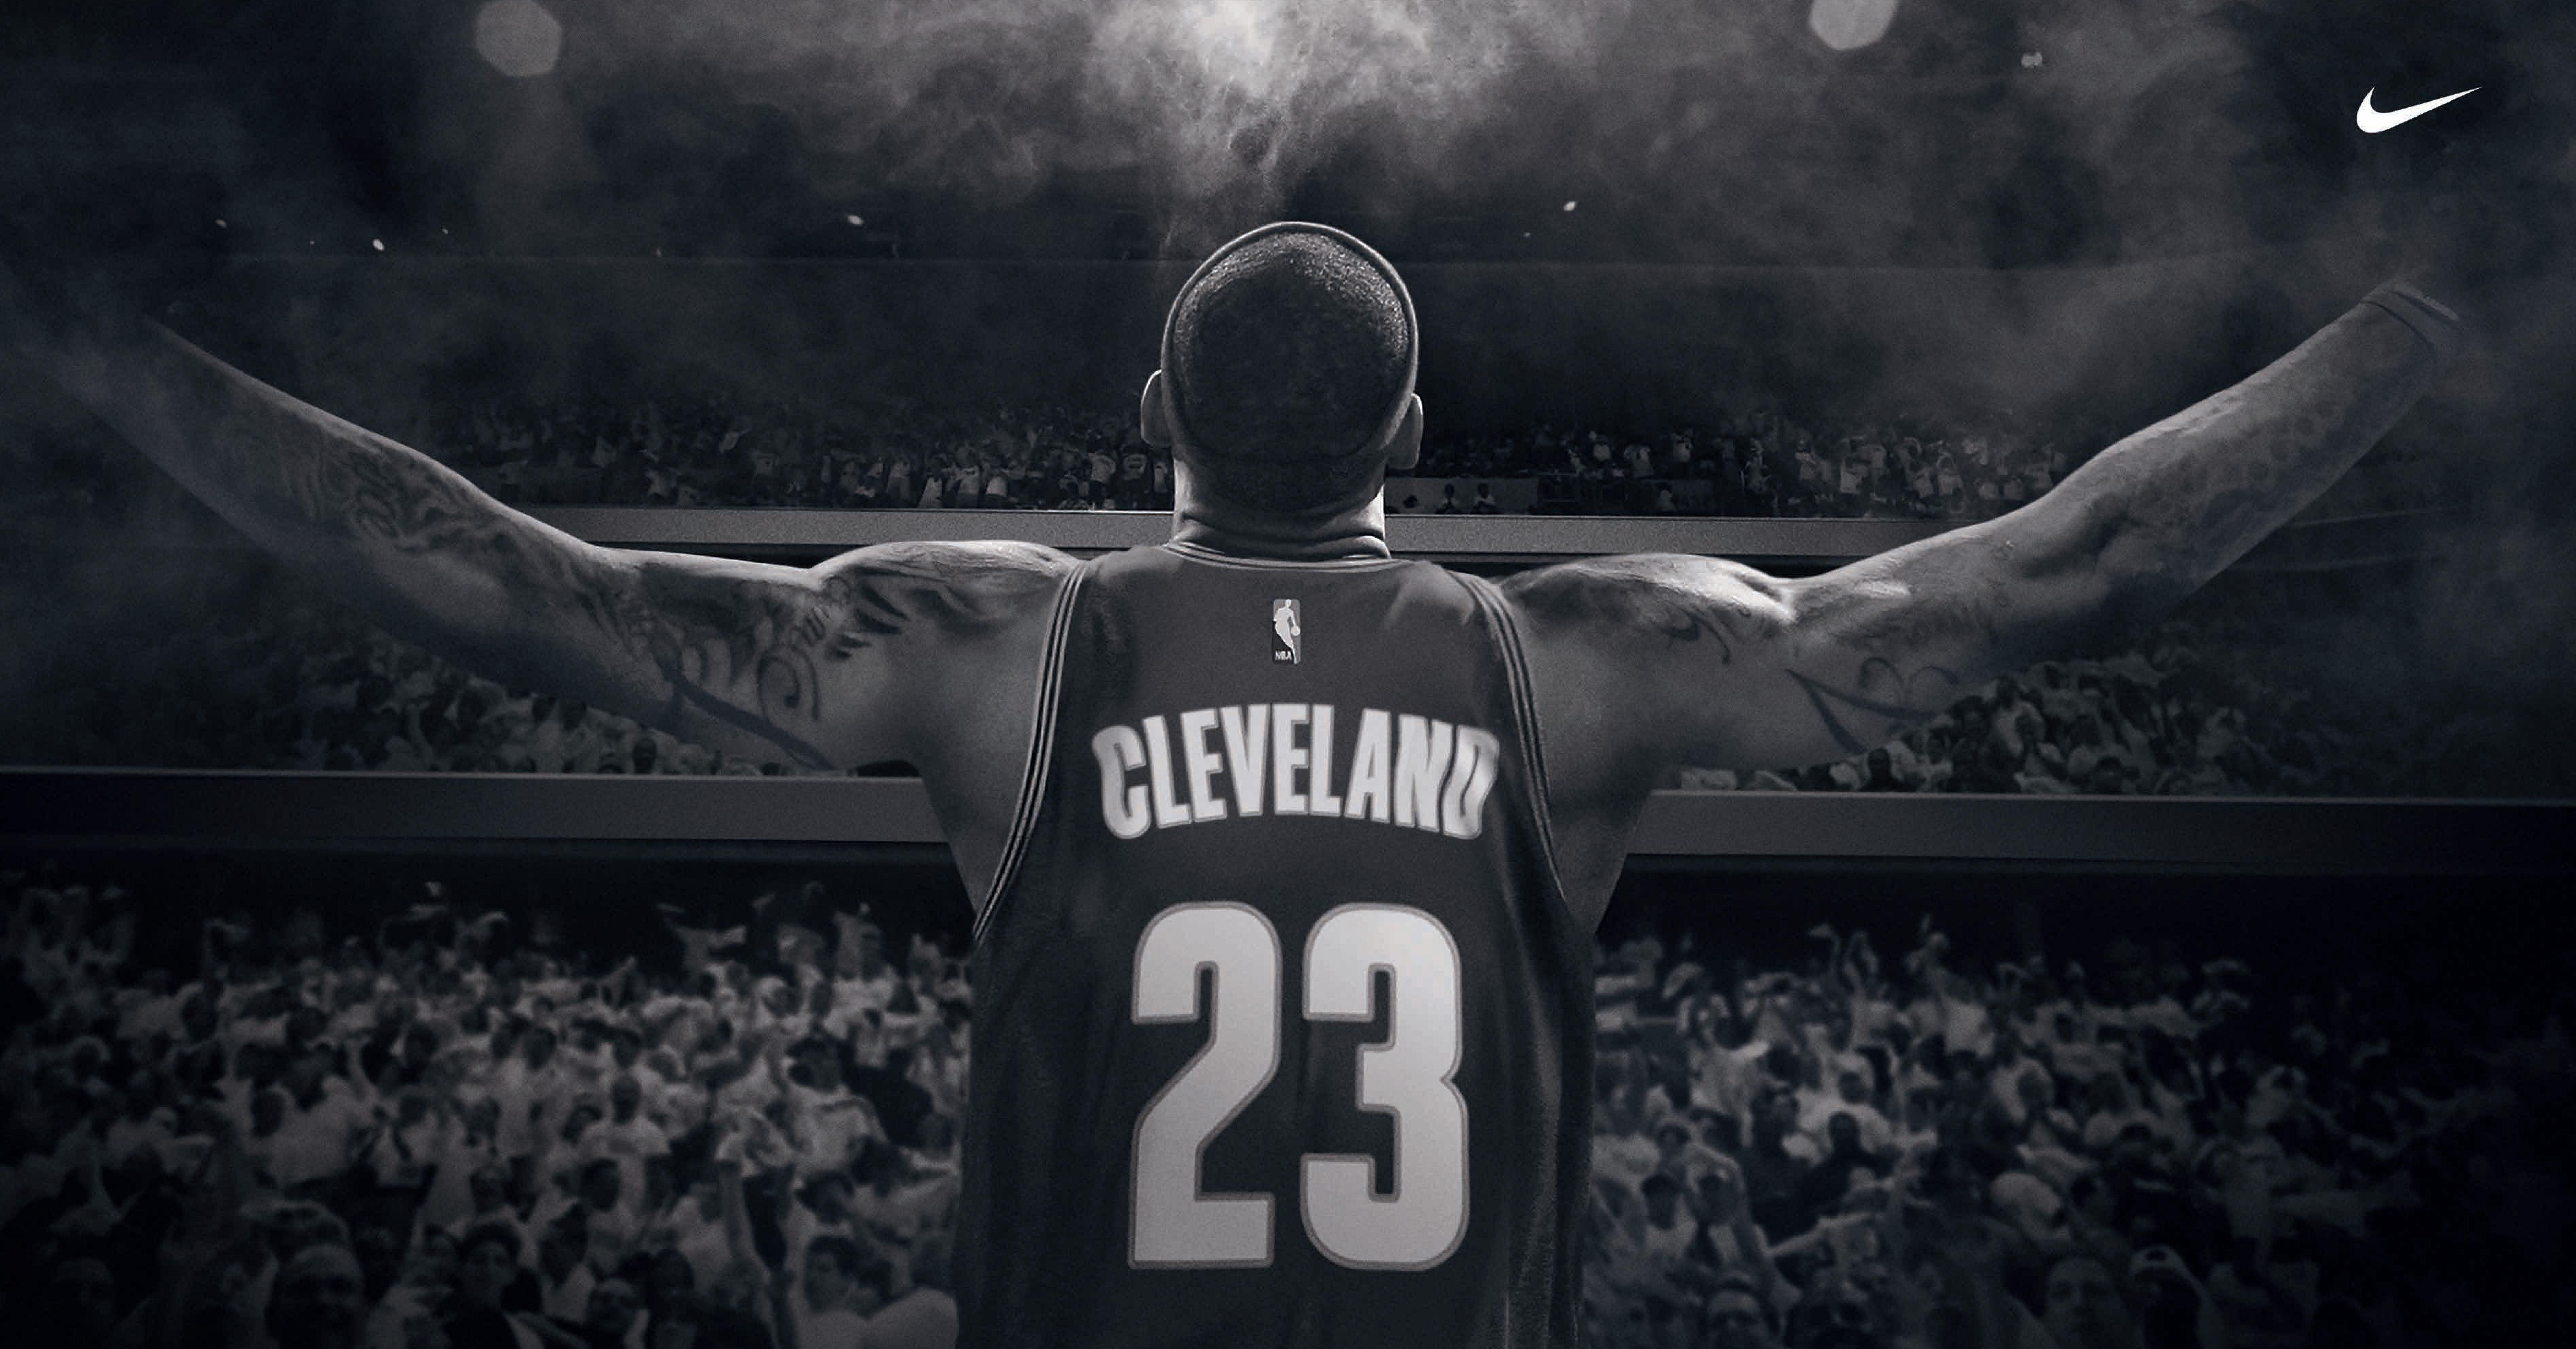 Nike News Basketball Debuts the LeBron James “Together” Film